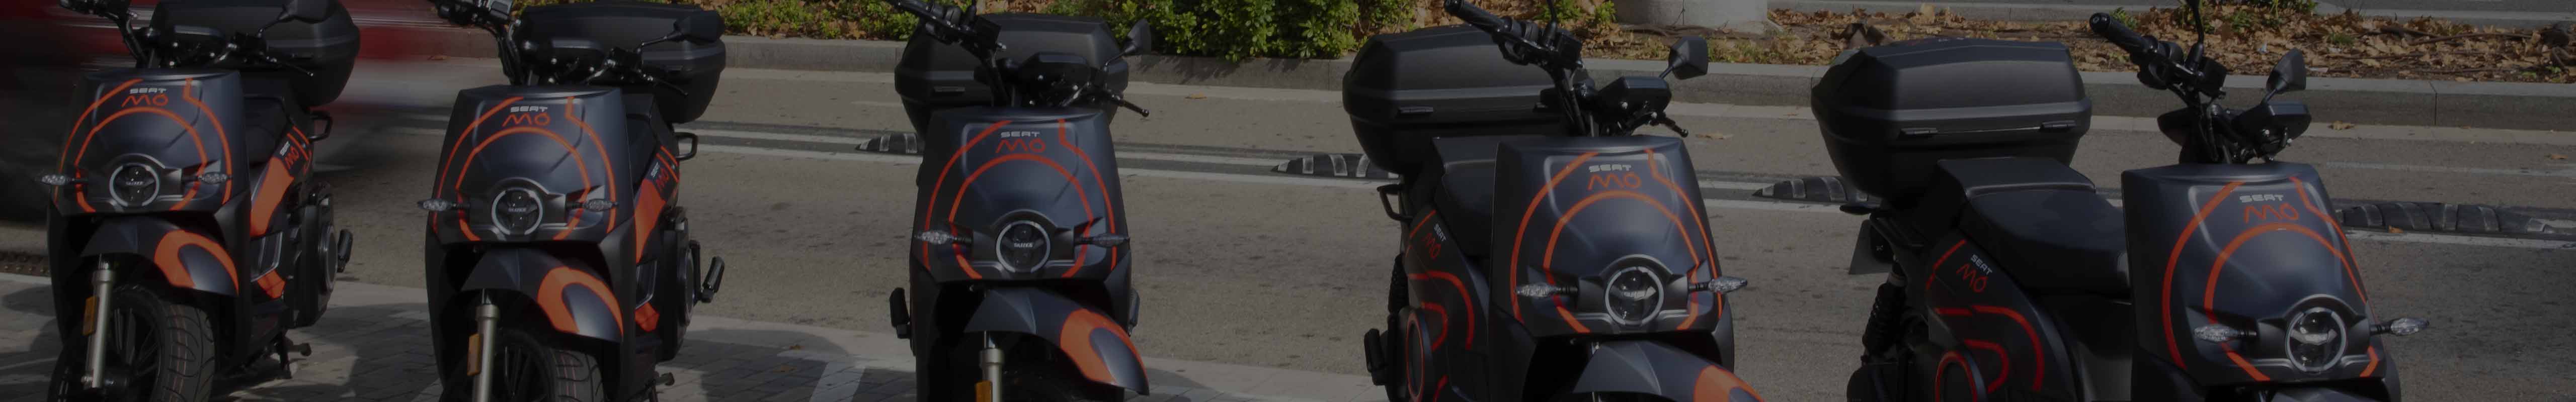 SEAT MÓ despliega su servicio de motosharing en Barcelona